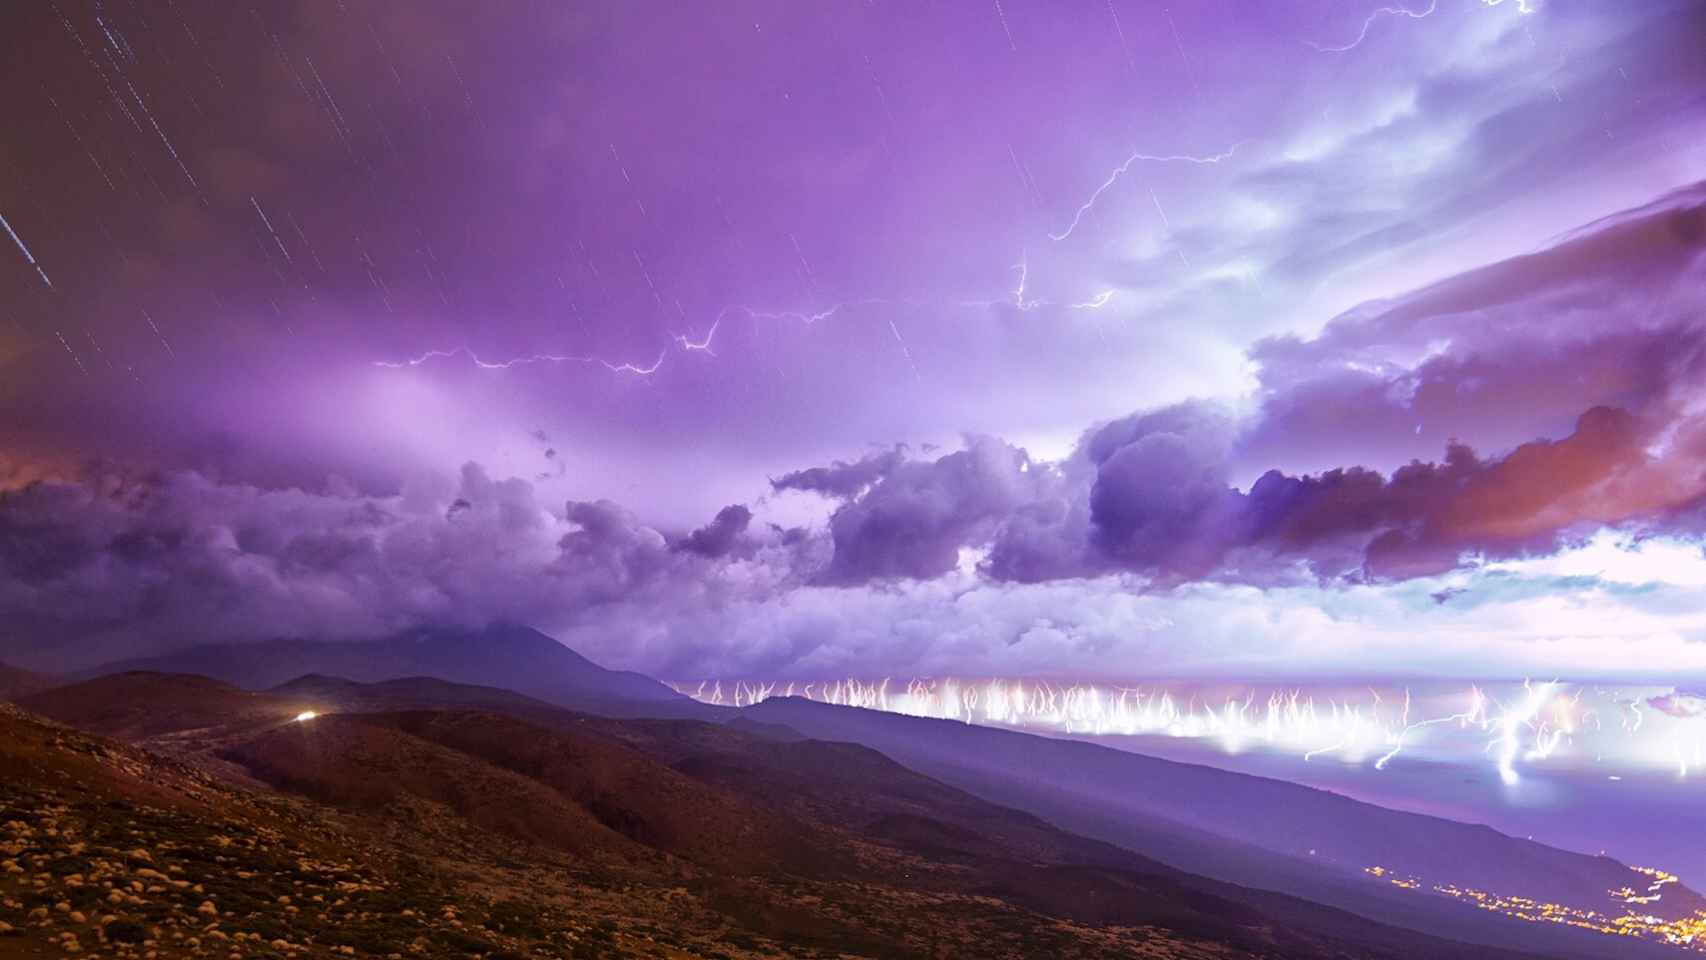 Tormenta eléctrica vista desde el observatorio de Izaña del Teide, Tenerife. EFE/Daniel López/elcielodecanarias.com